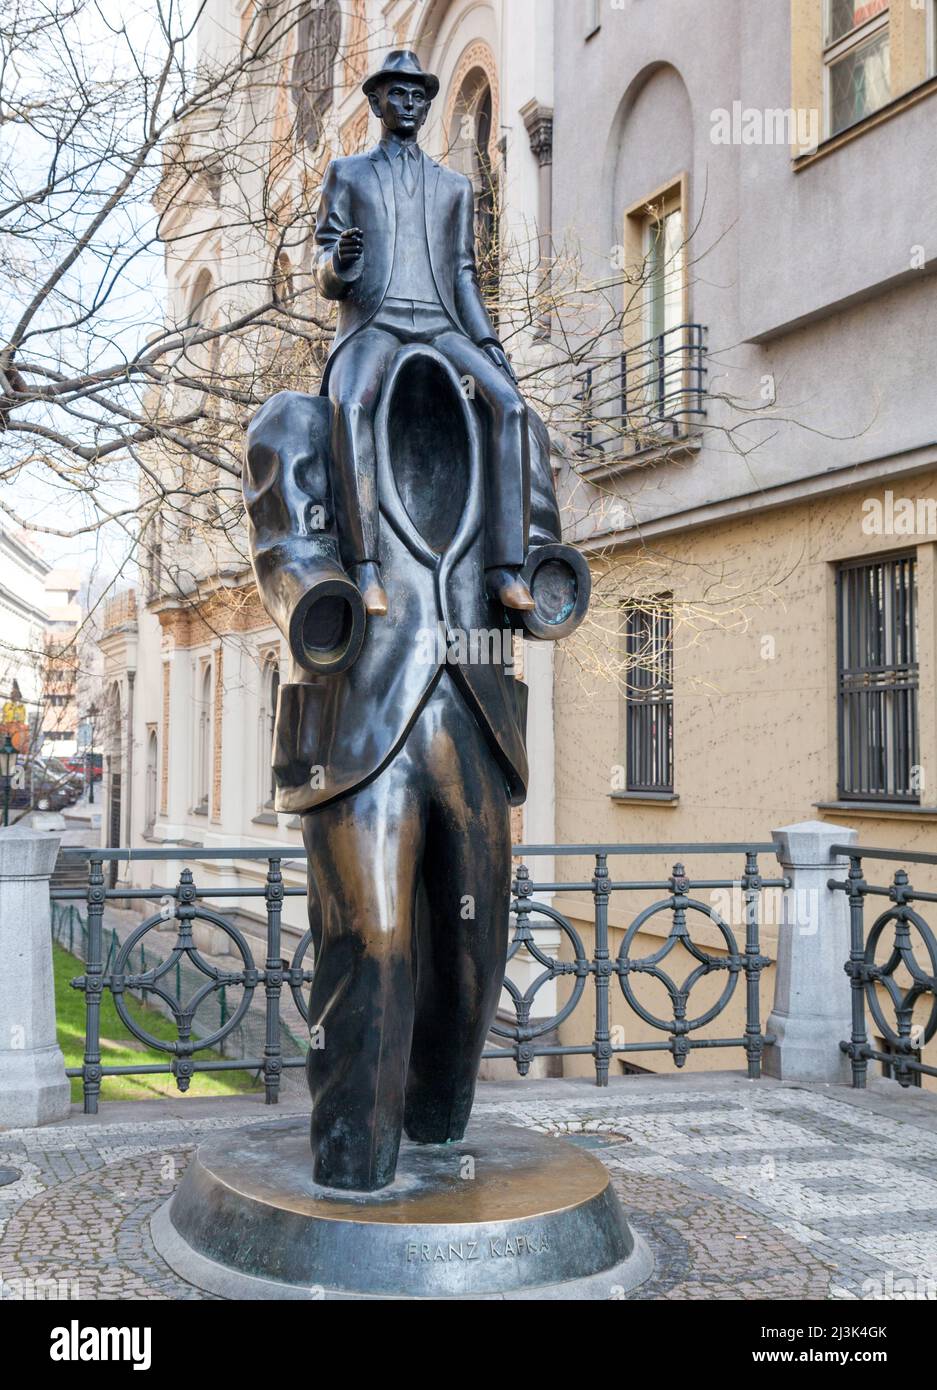 PRAGA, REPÚBLICA CHECA - 20 DE FEBRERO de 2015 - monumento a Franz Kafka Foto de stock